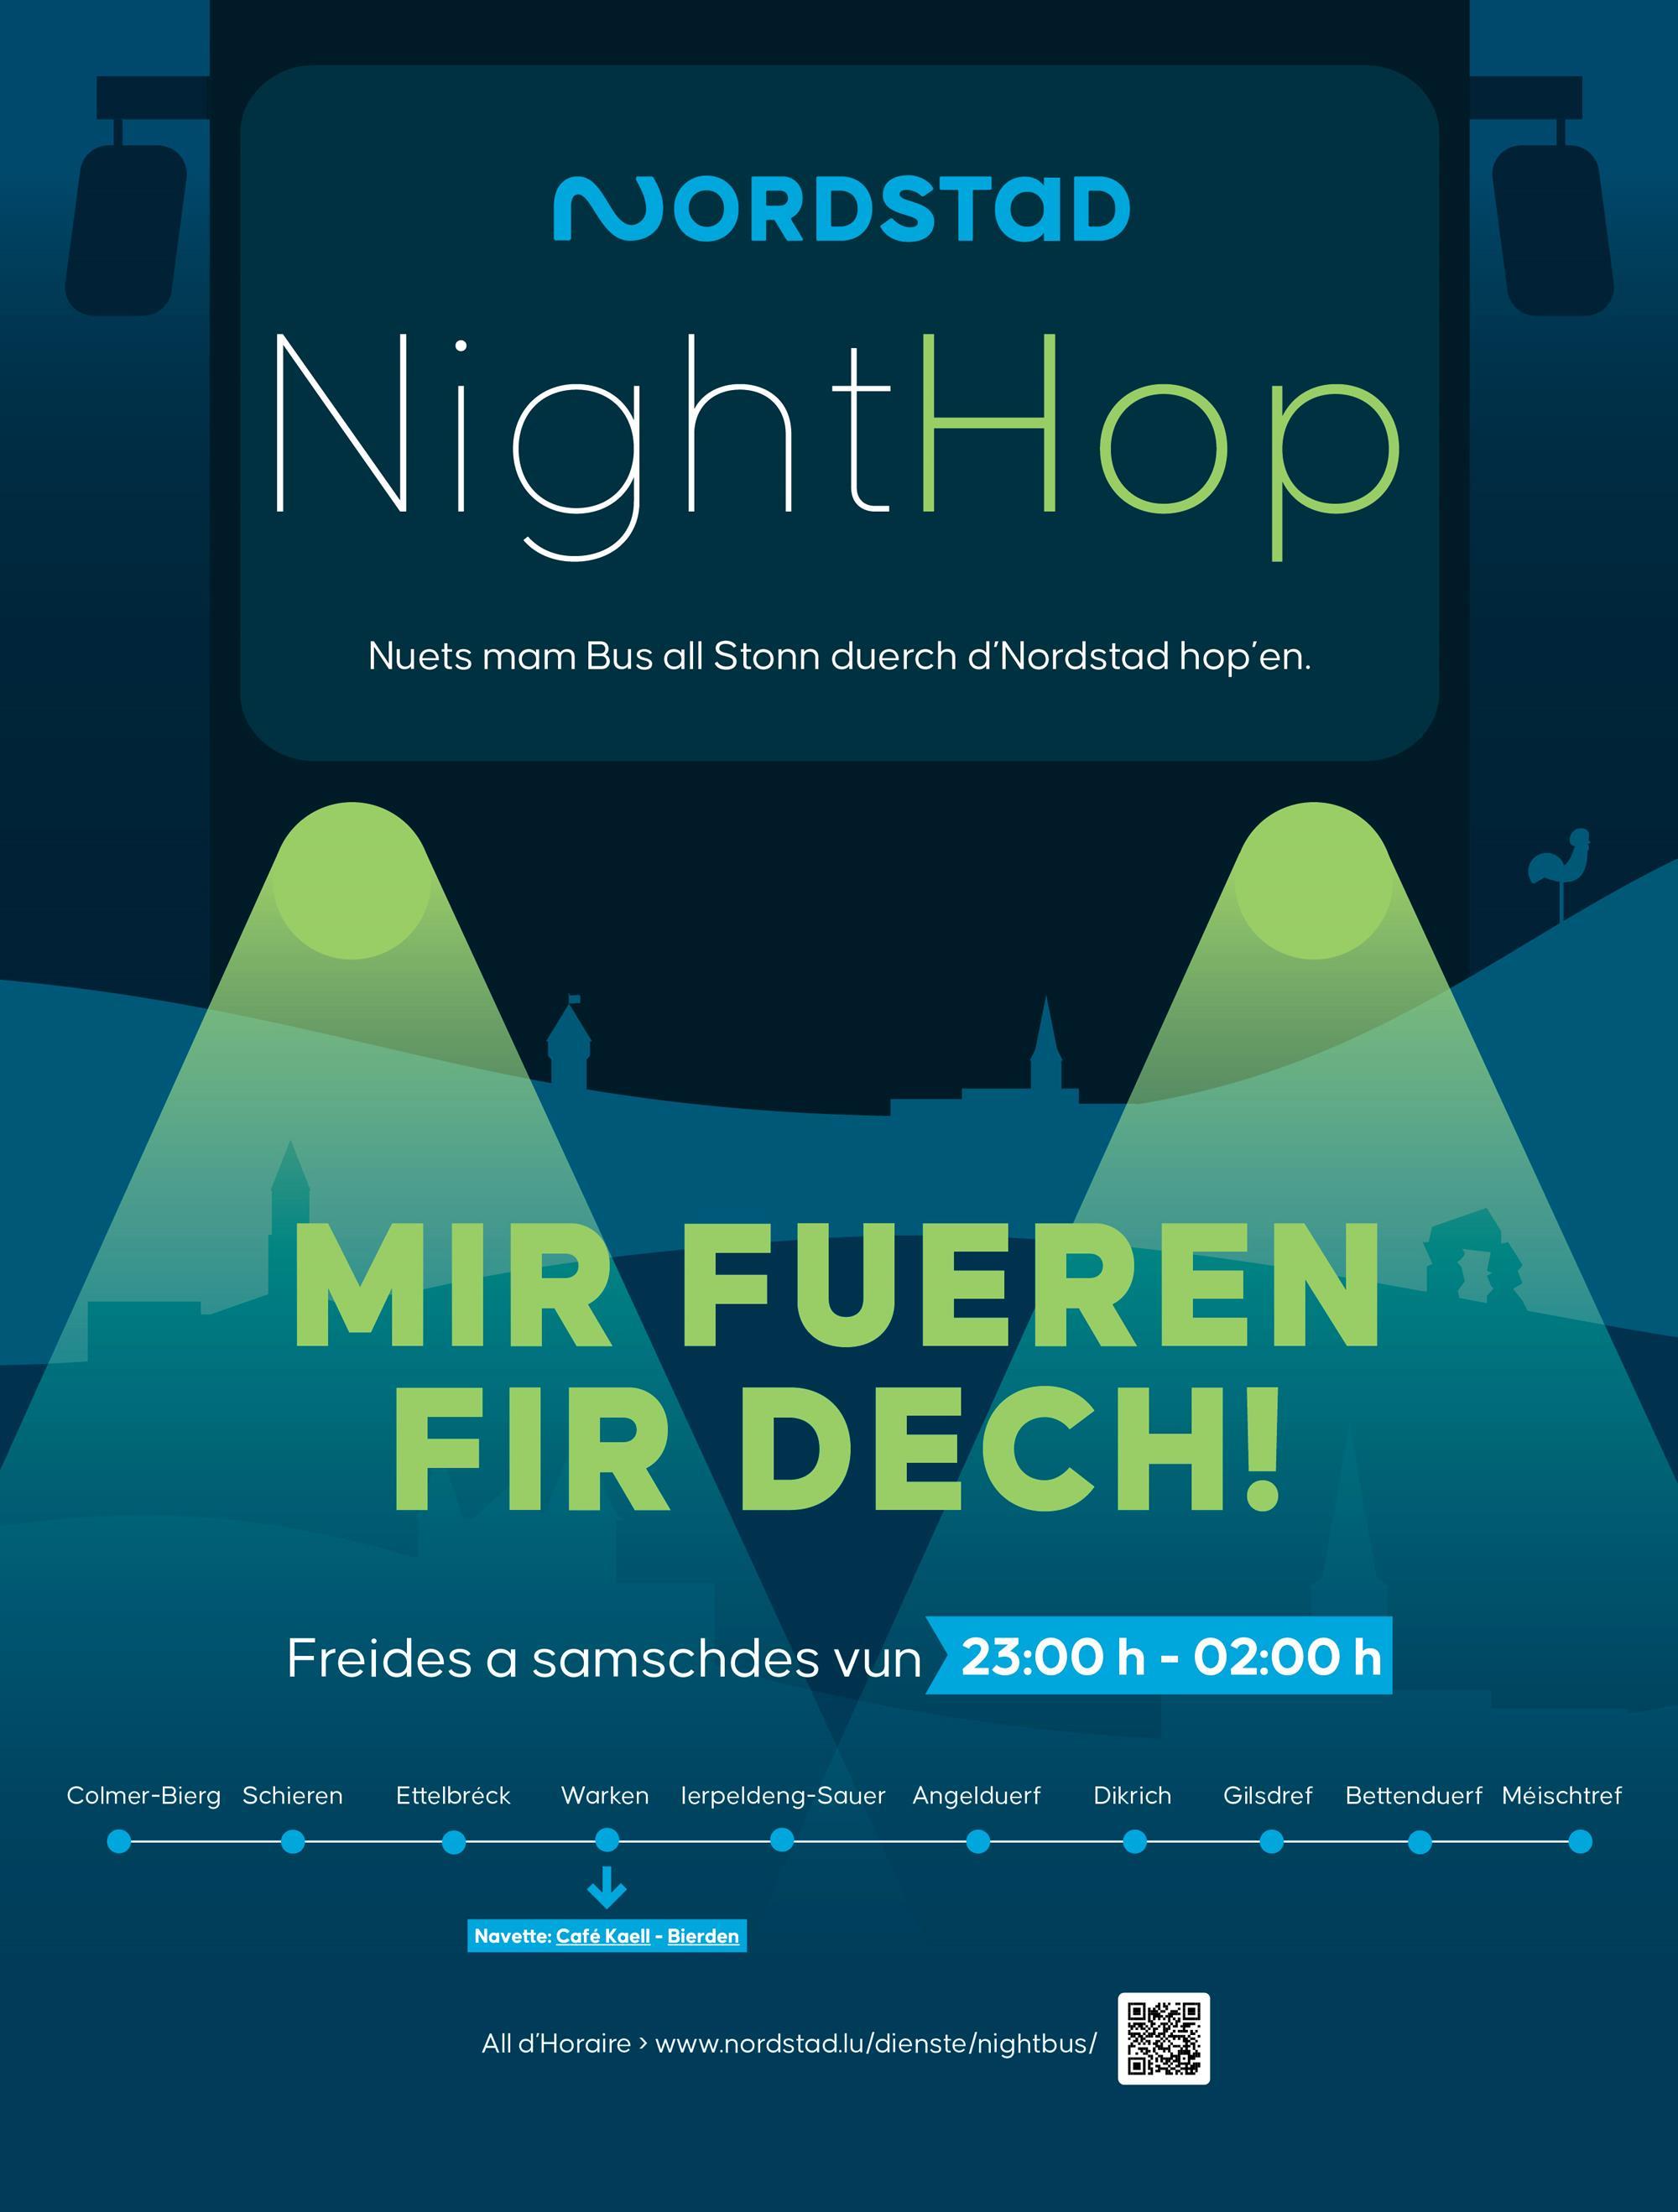 NightHop - gratis Nachtbus der Nordstad